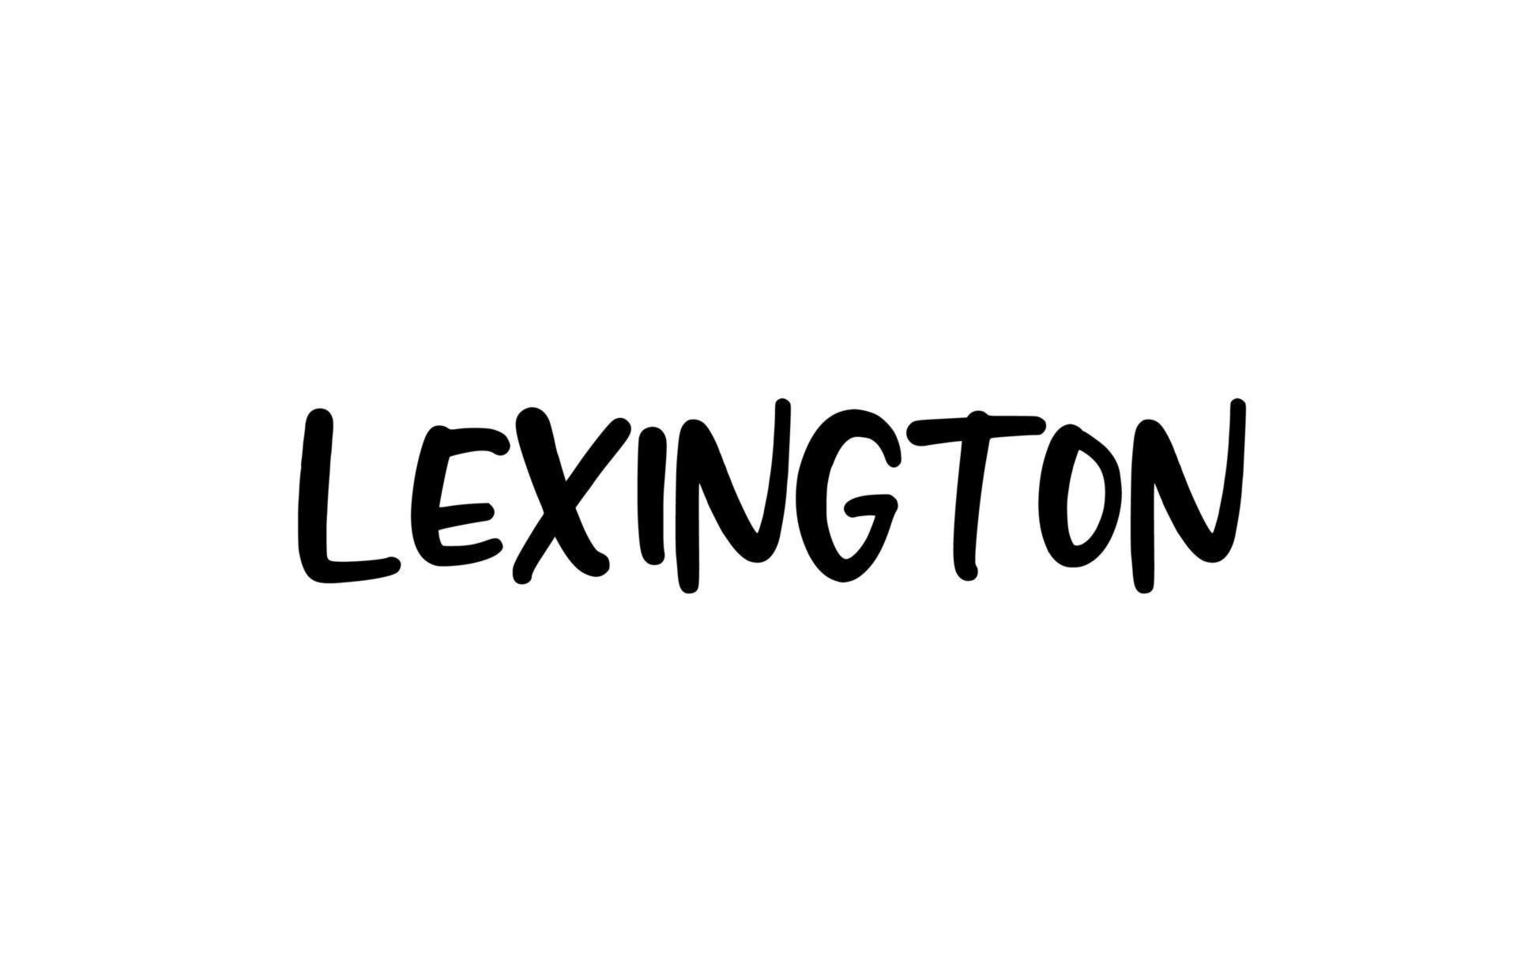 lexington city tipografía manuscrita palabra texto letras a mano. texto de caligrafía moderna. de color negro vector